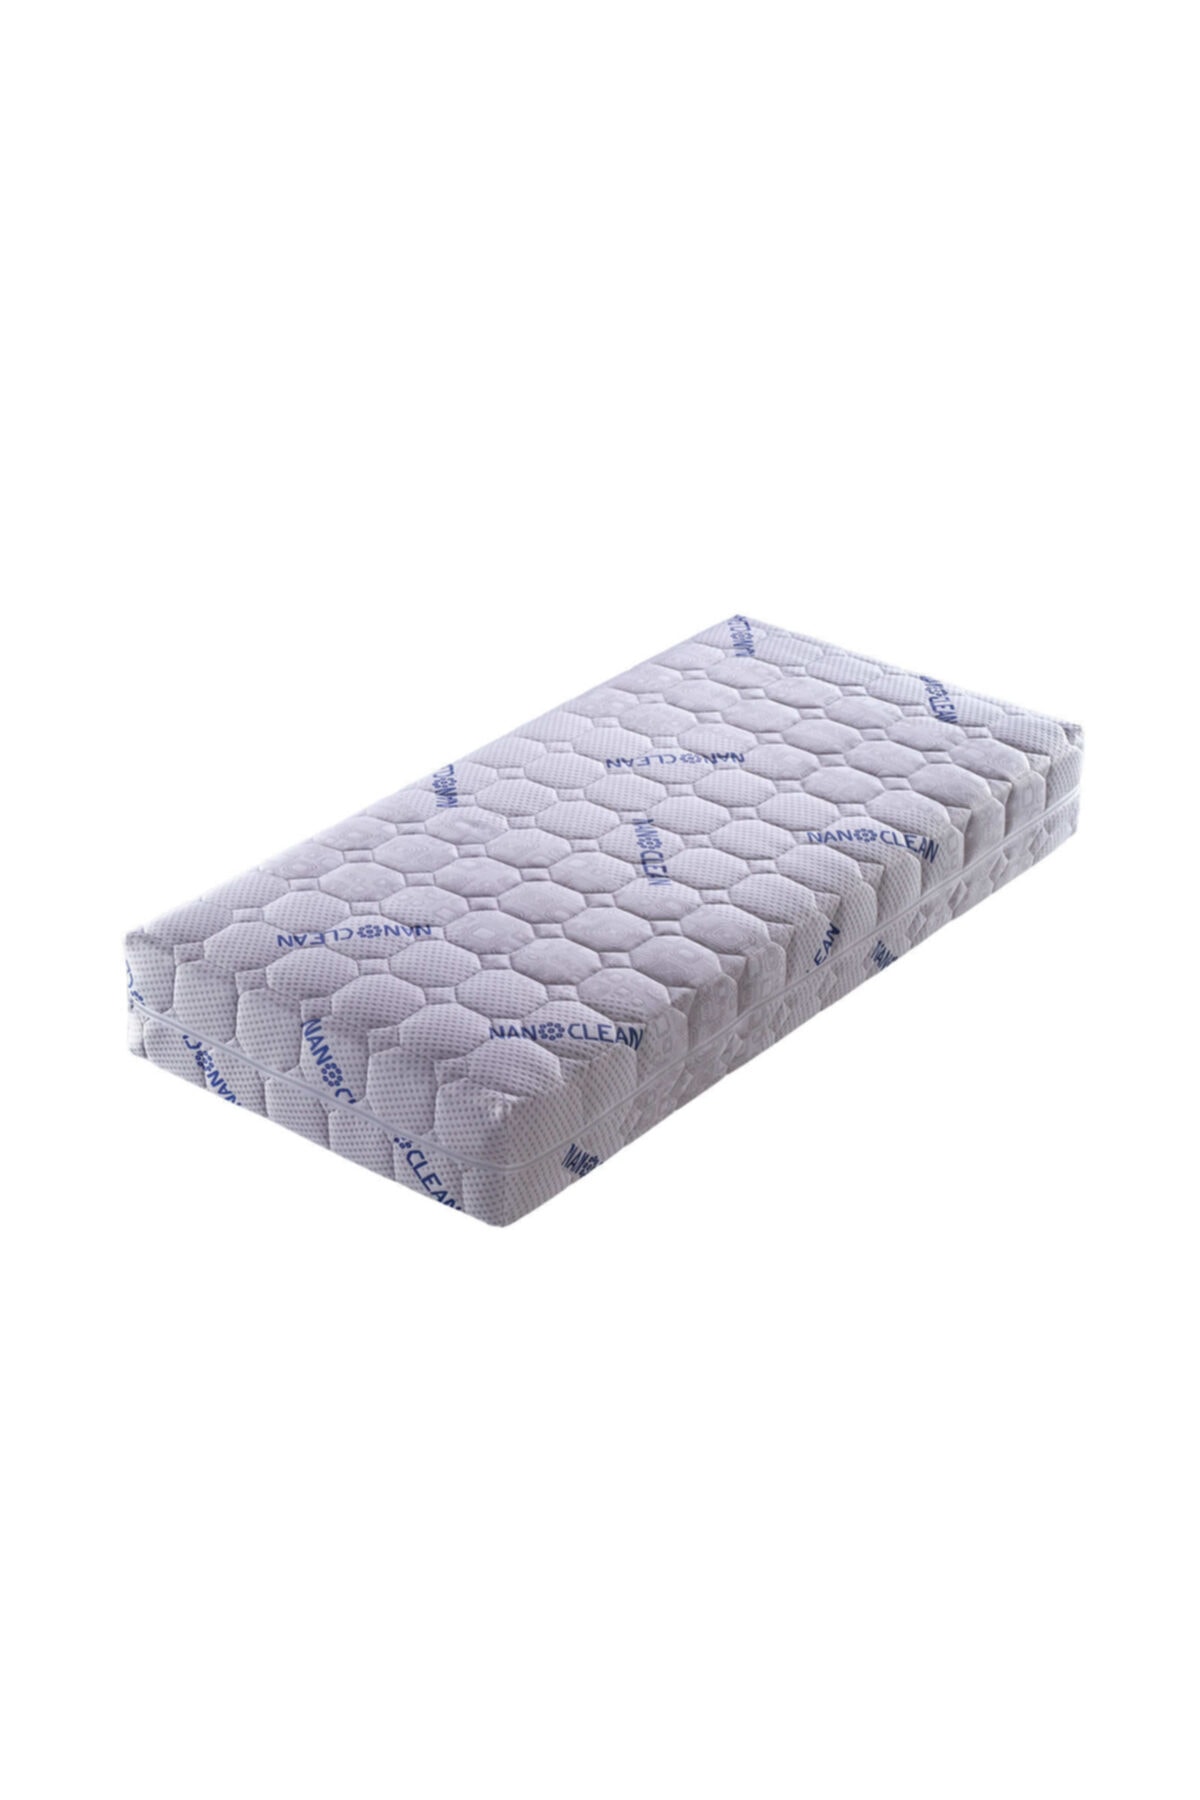 Artex Bedcom Nano Bebek Yatağı 70x130 Kılıflı 12cm Sünger Yatak Park Yatak Oyun Parkı